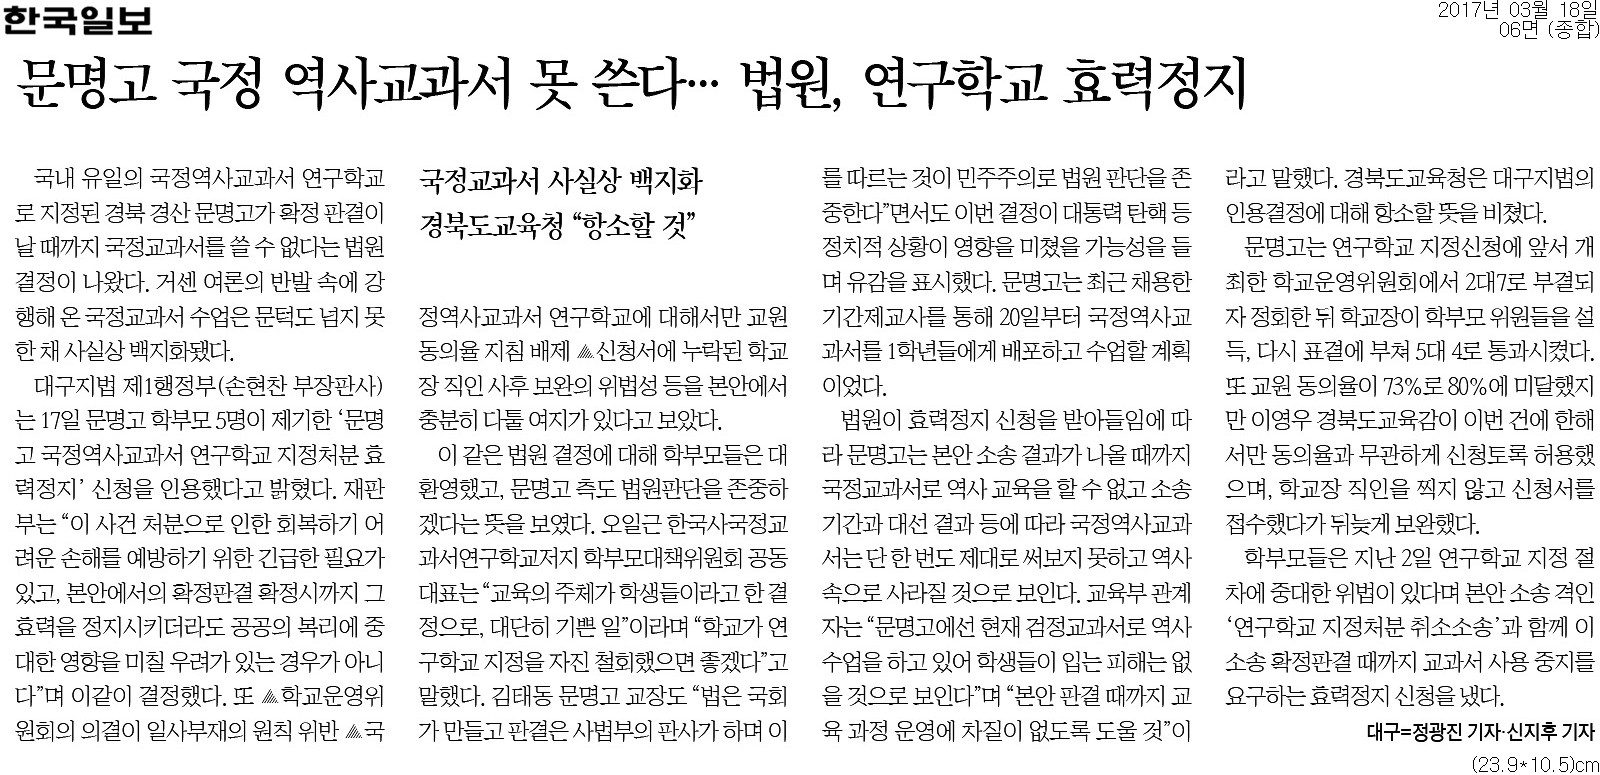 ▲ 한국일보 6면 기사